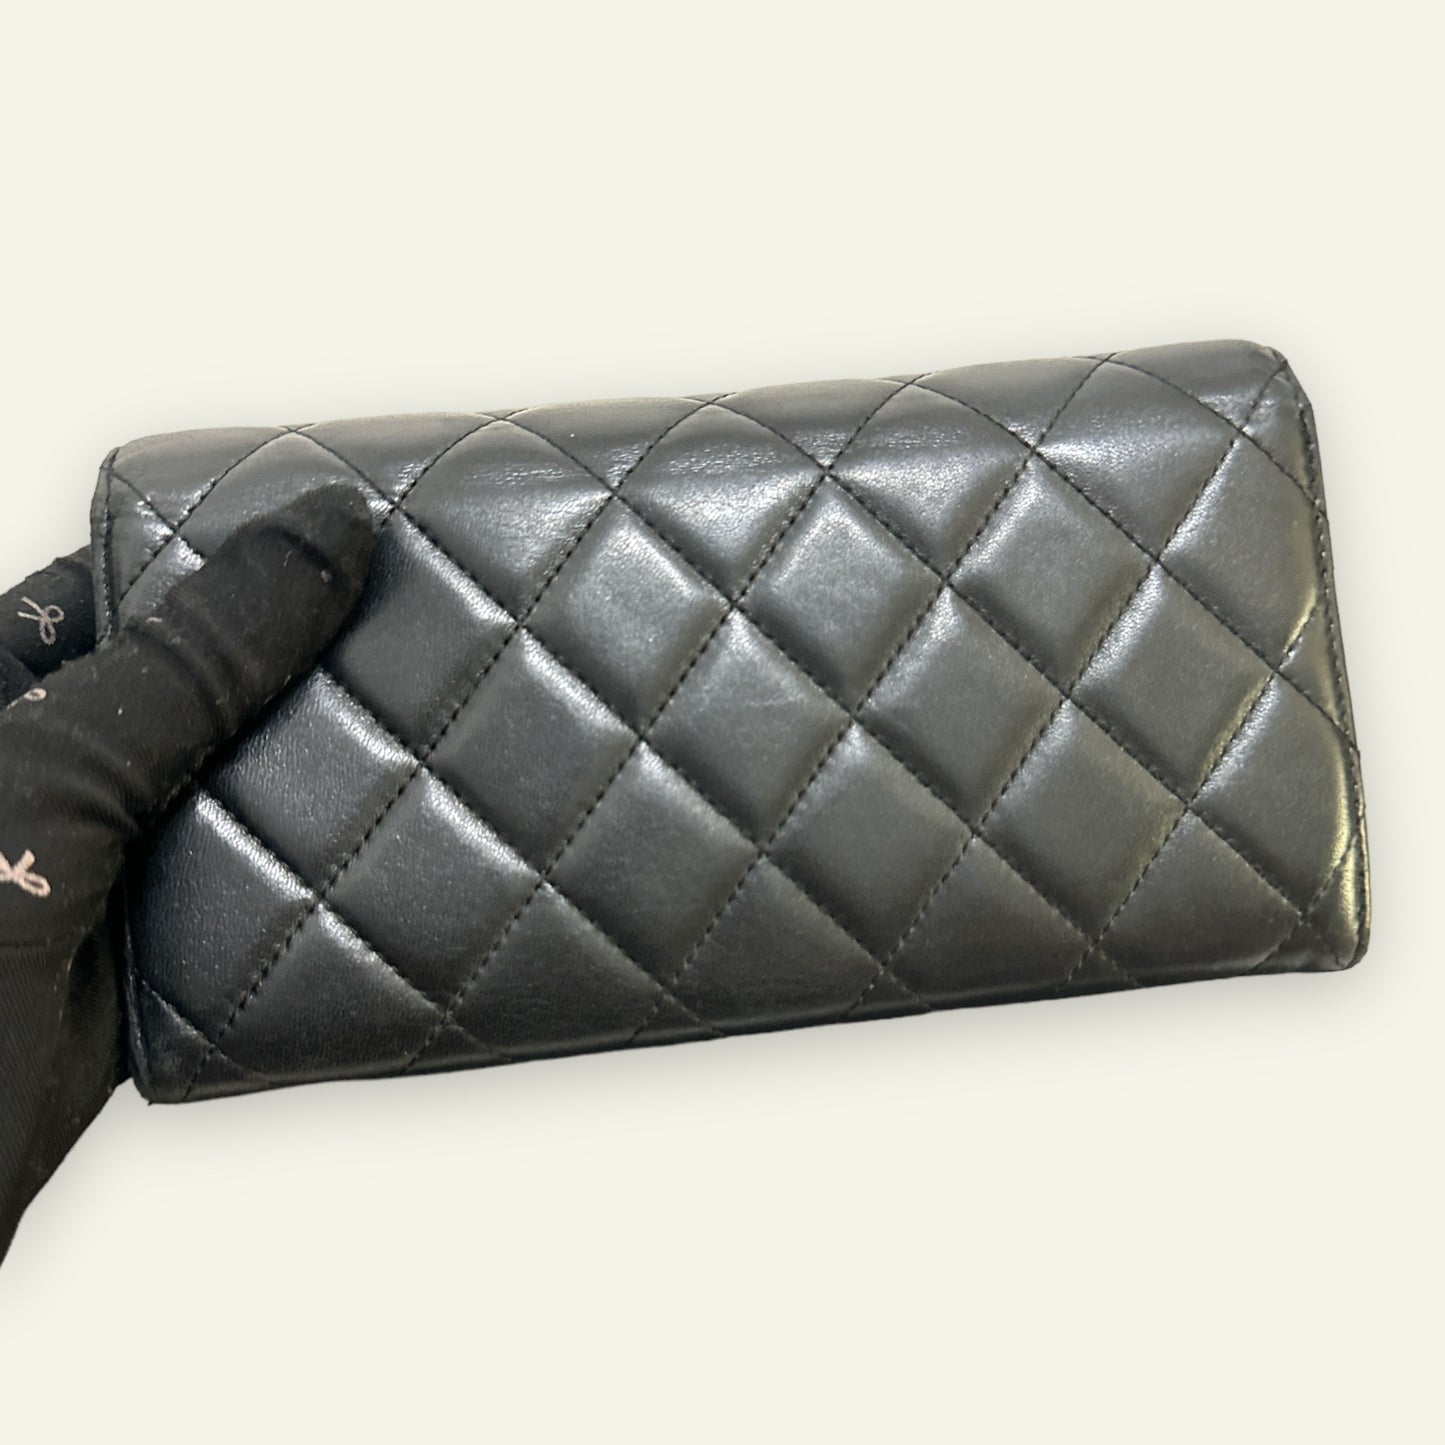 Chanel Flap Long Wallet